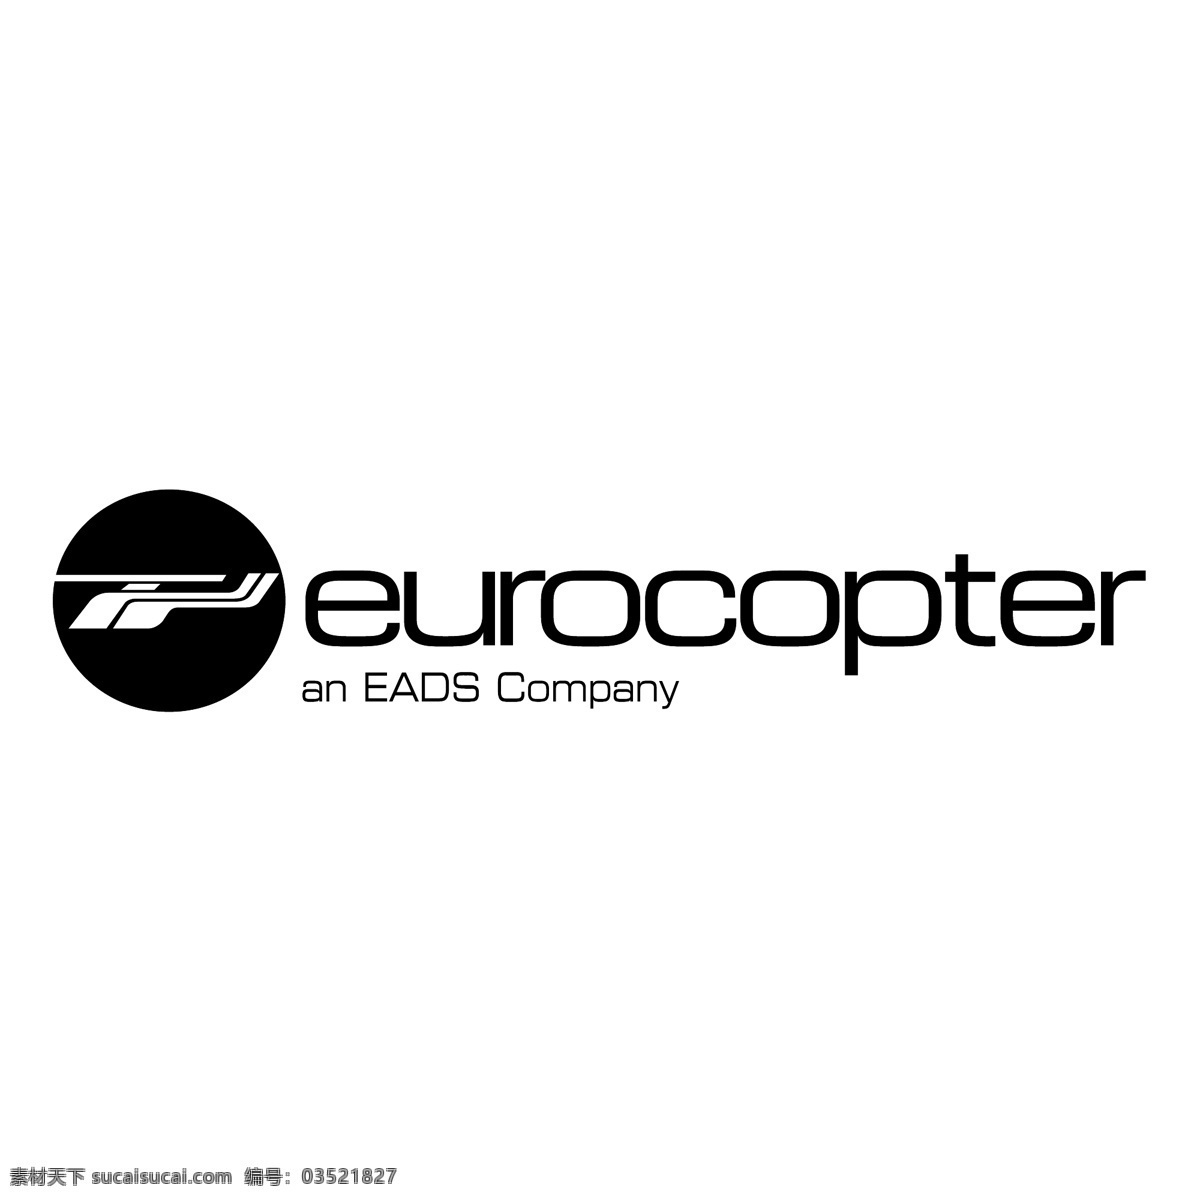 欧洲 直升机 公司 logo 矢量 eurocopter 标志 eps向量 矢量图 建筑家居